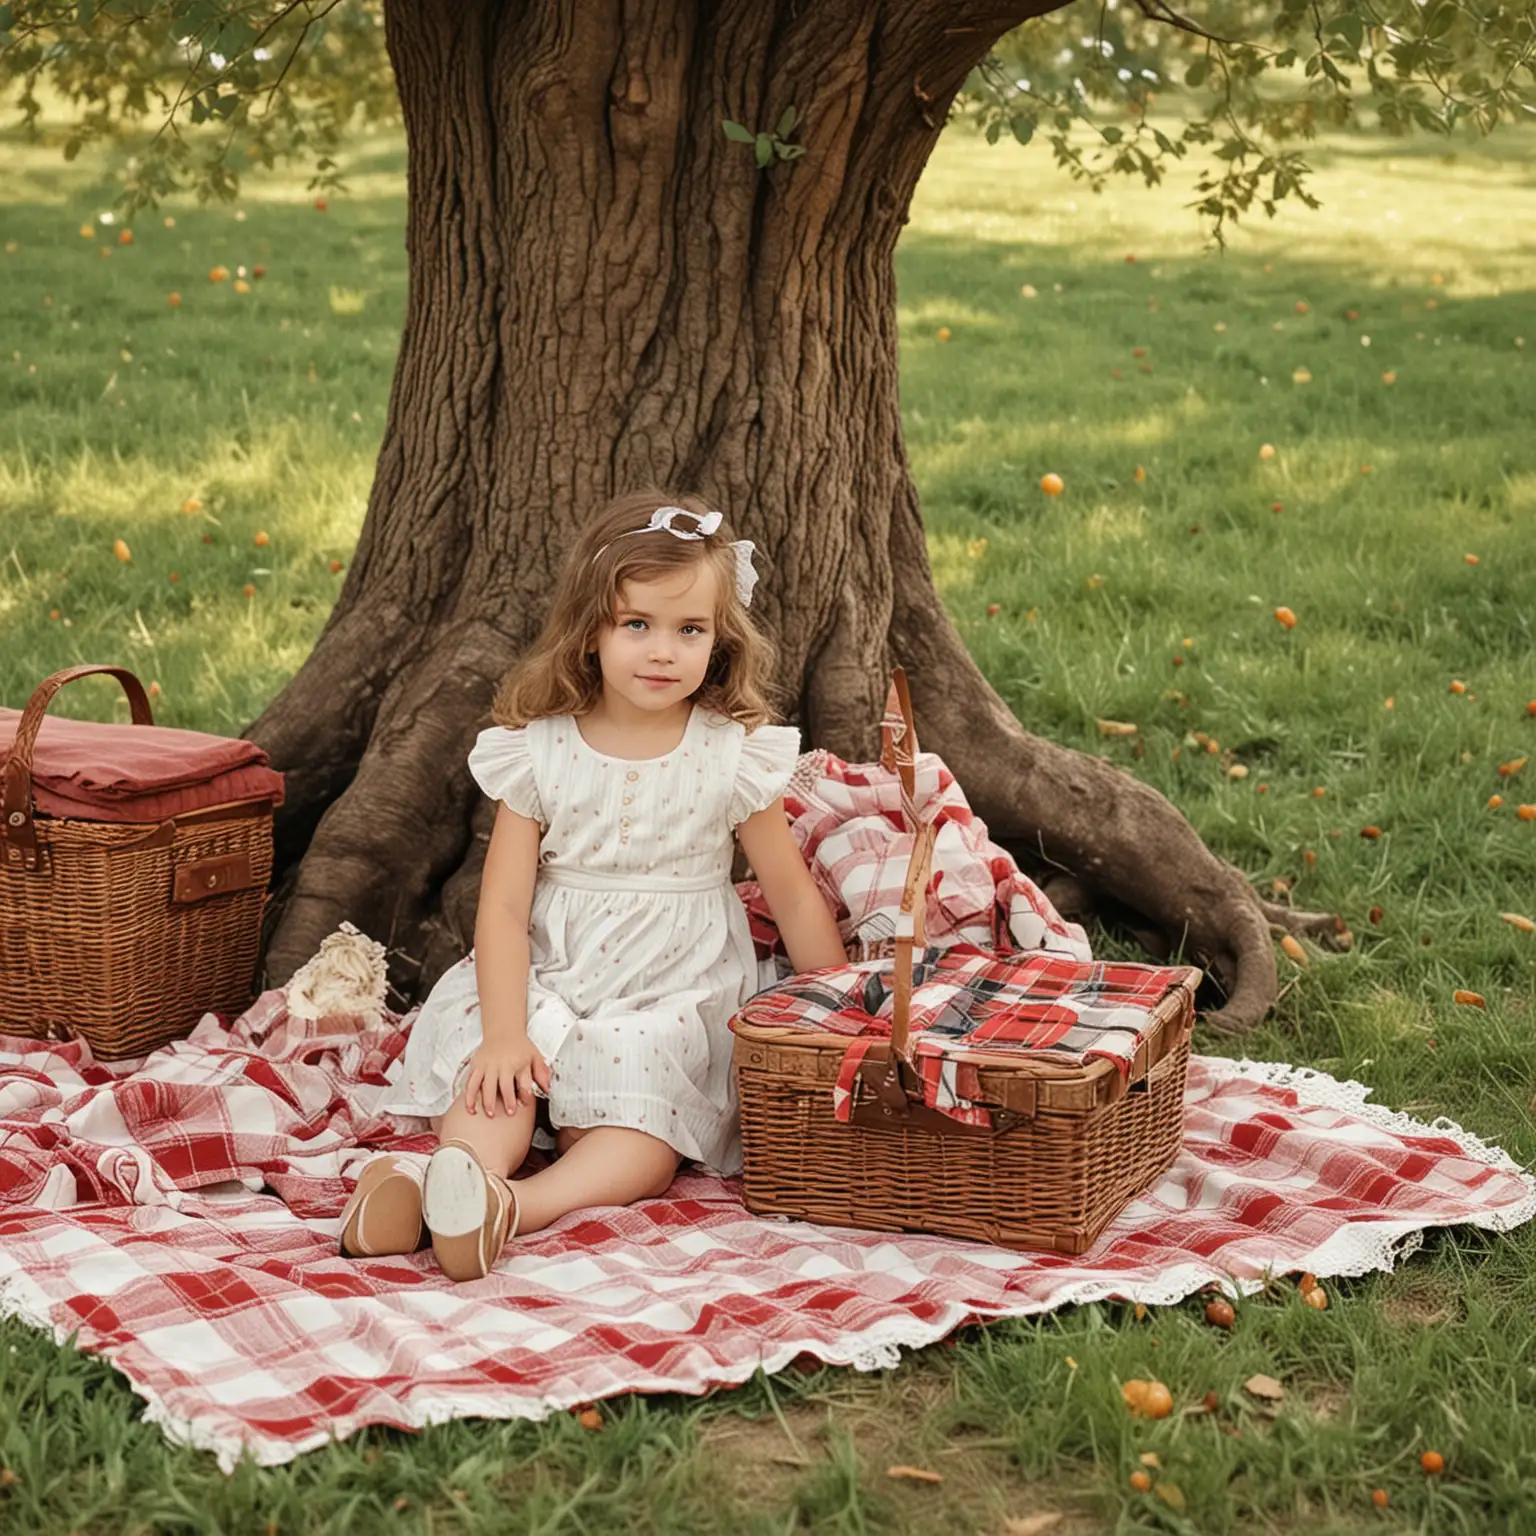 Vintage Little Girl Sitting Under Tree with Picnic Basket on Blanket